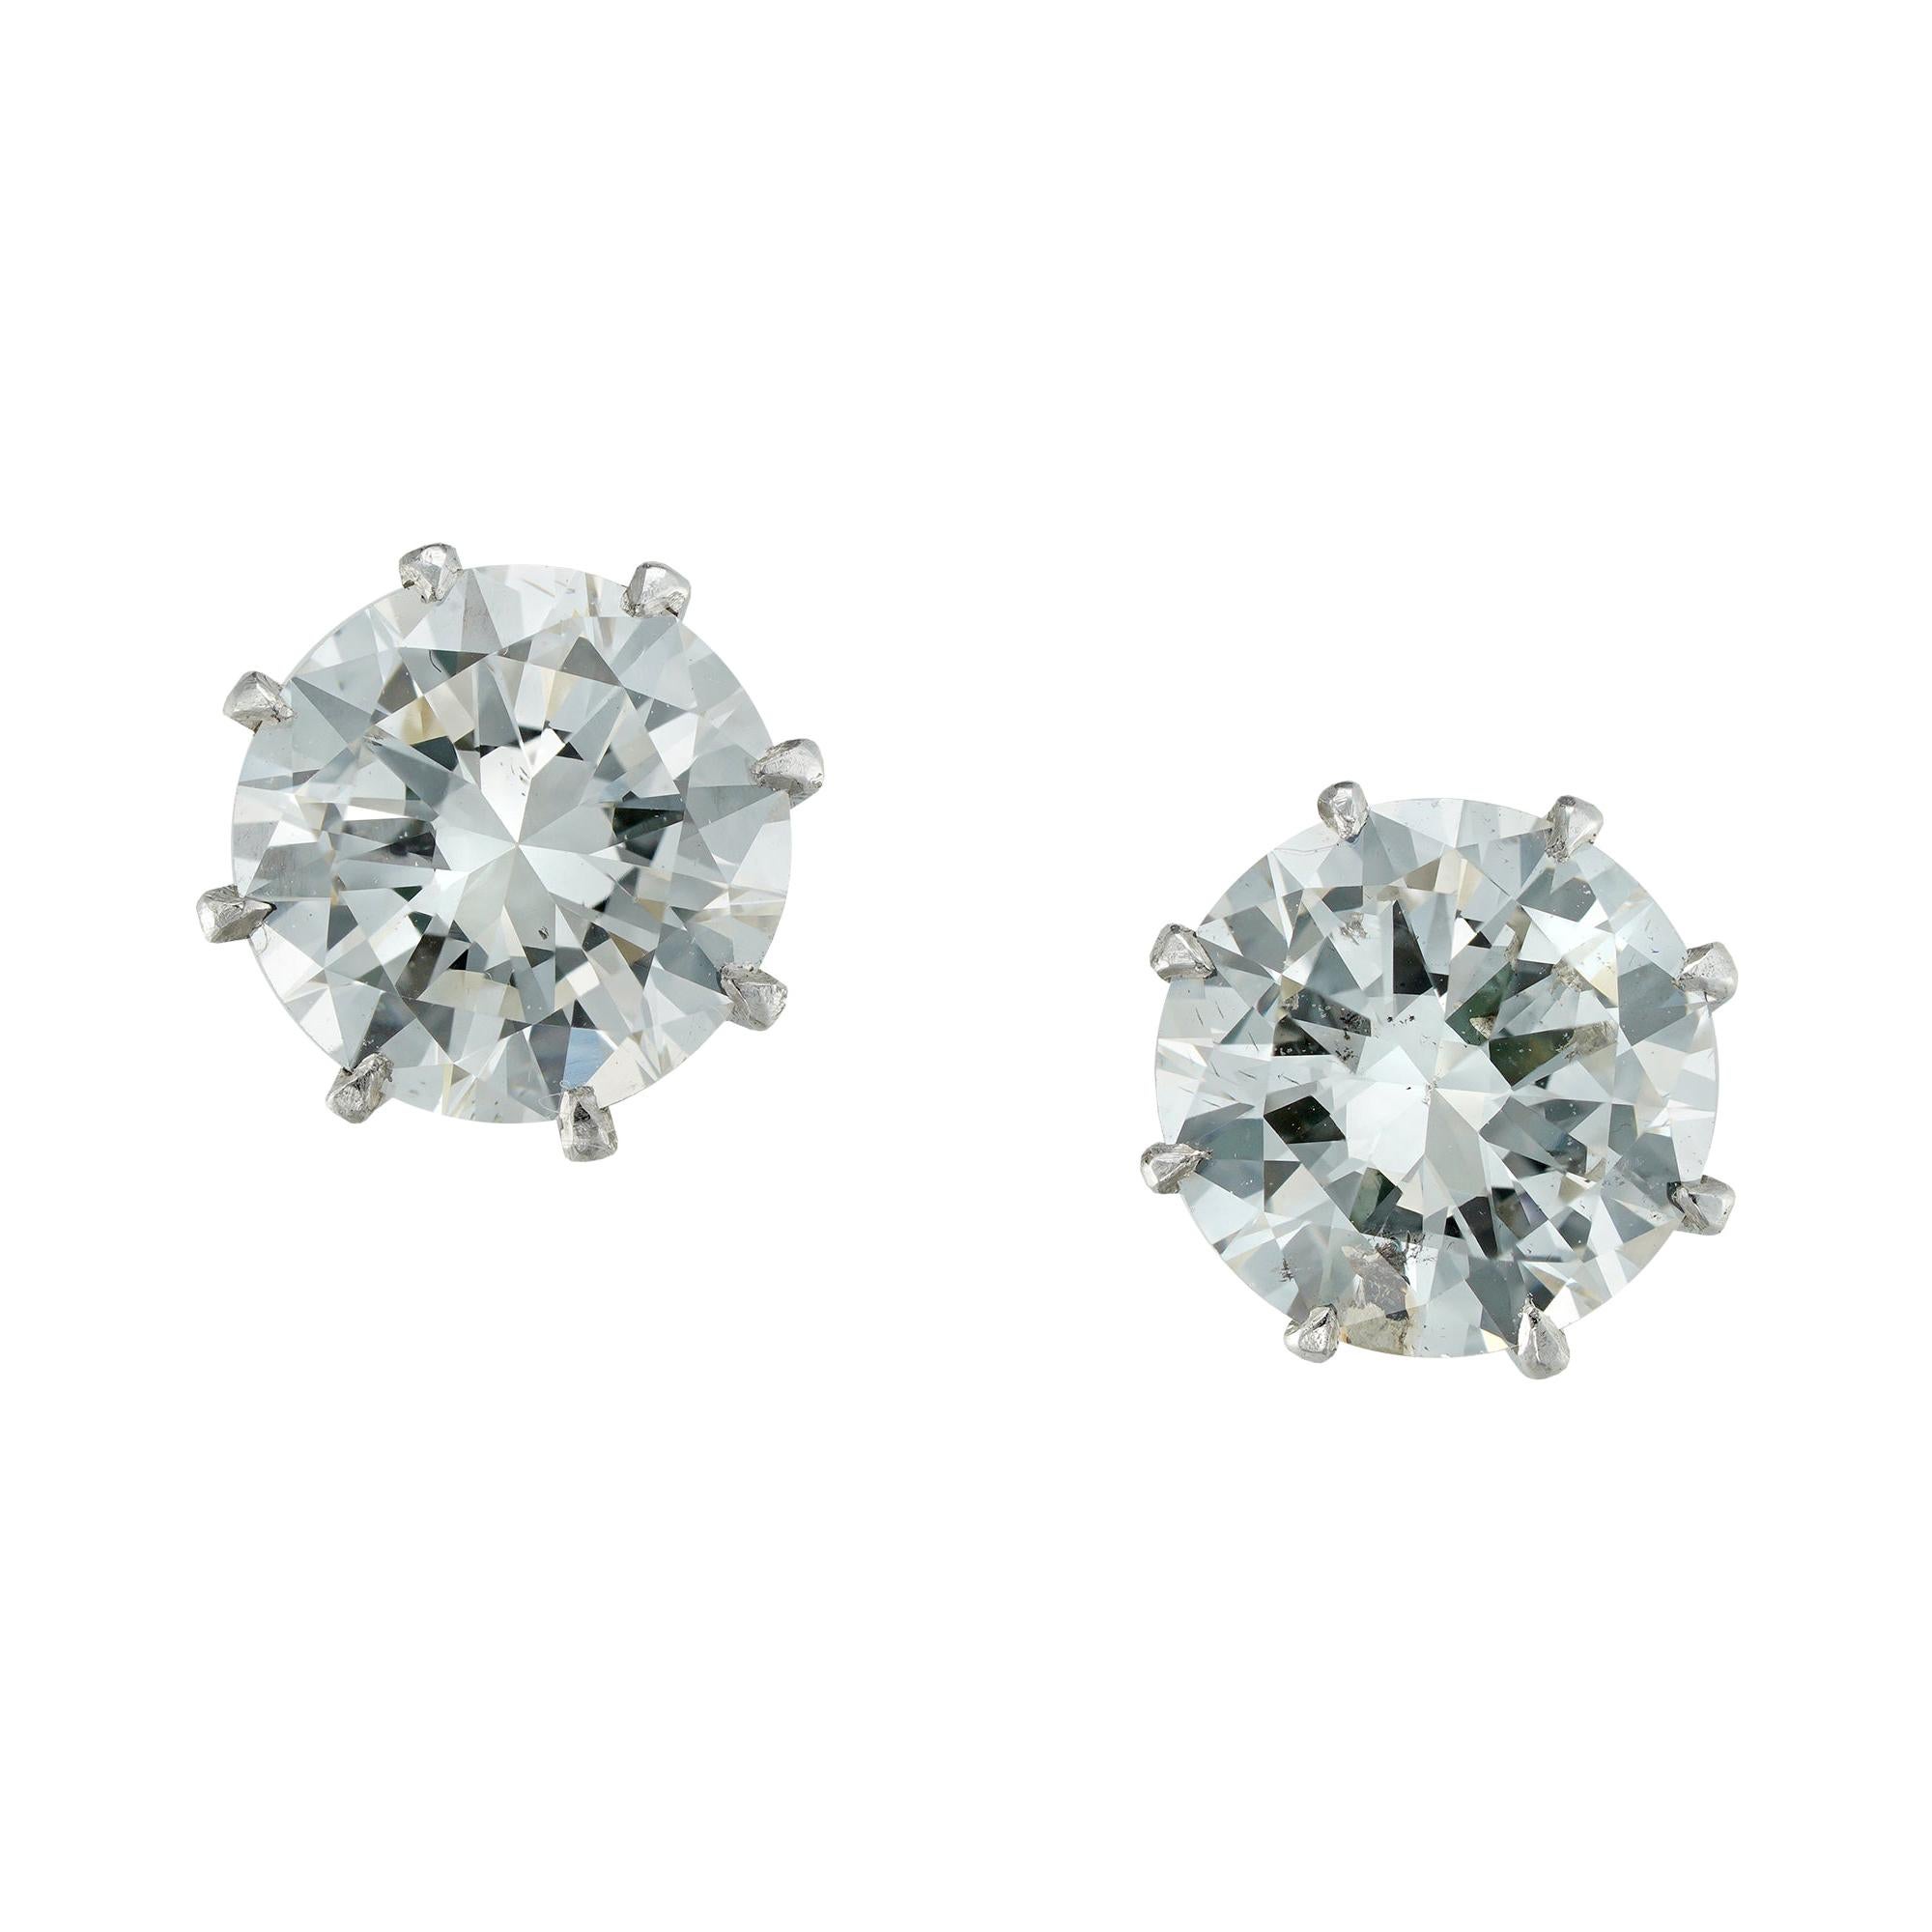 DeBeers Certified Round Brilliant-Cut Diamond Stud Earrings